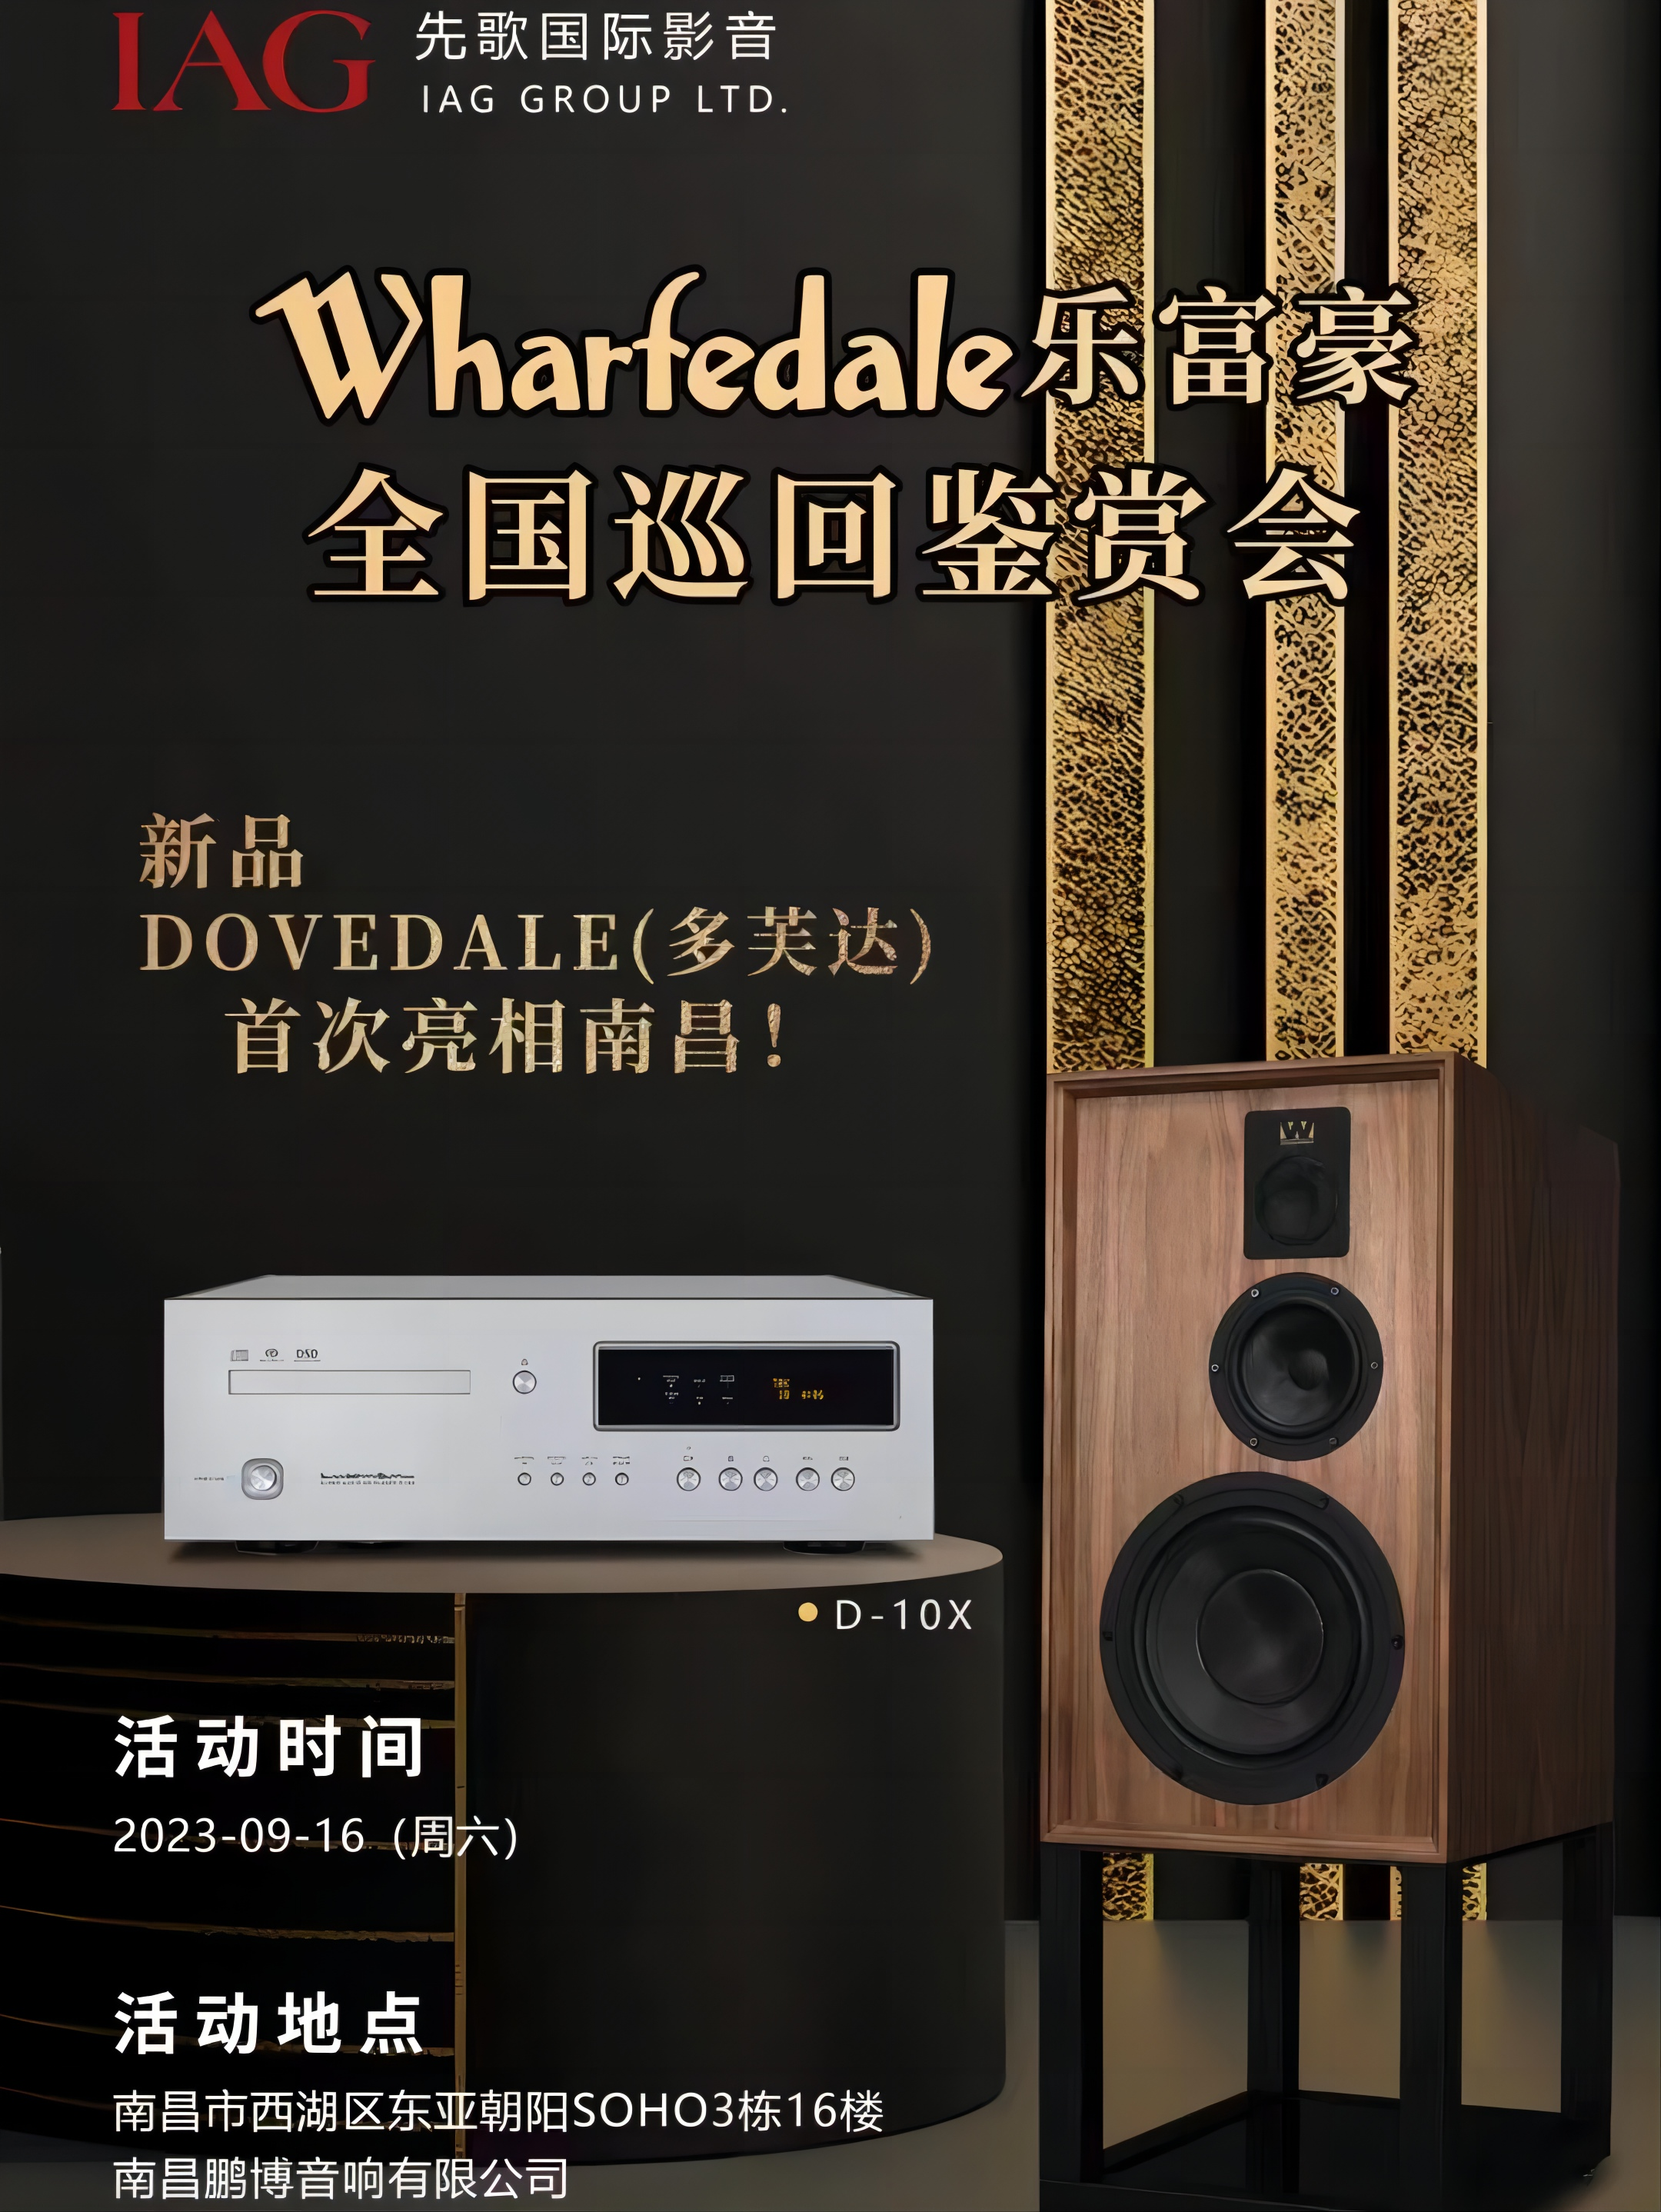 活動報道 | Wharfedale巡展-南昌鵬博20周年慶典